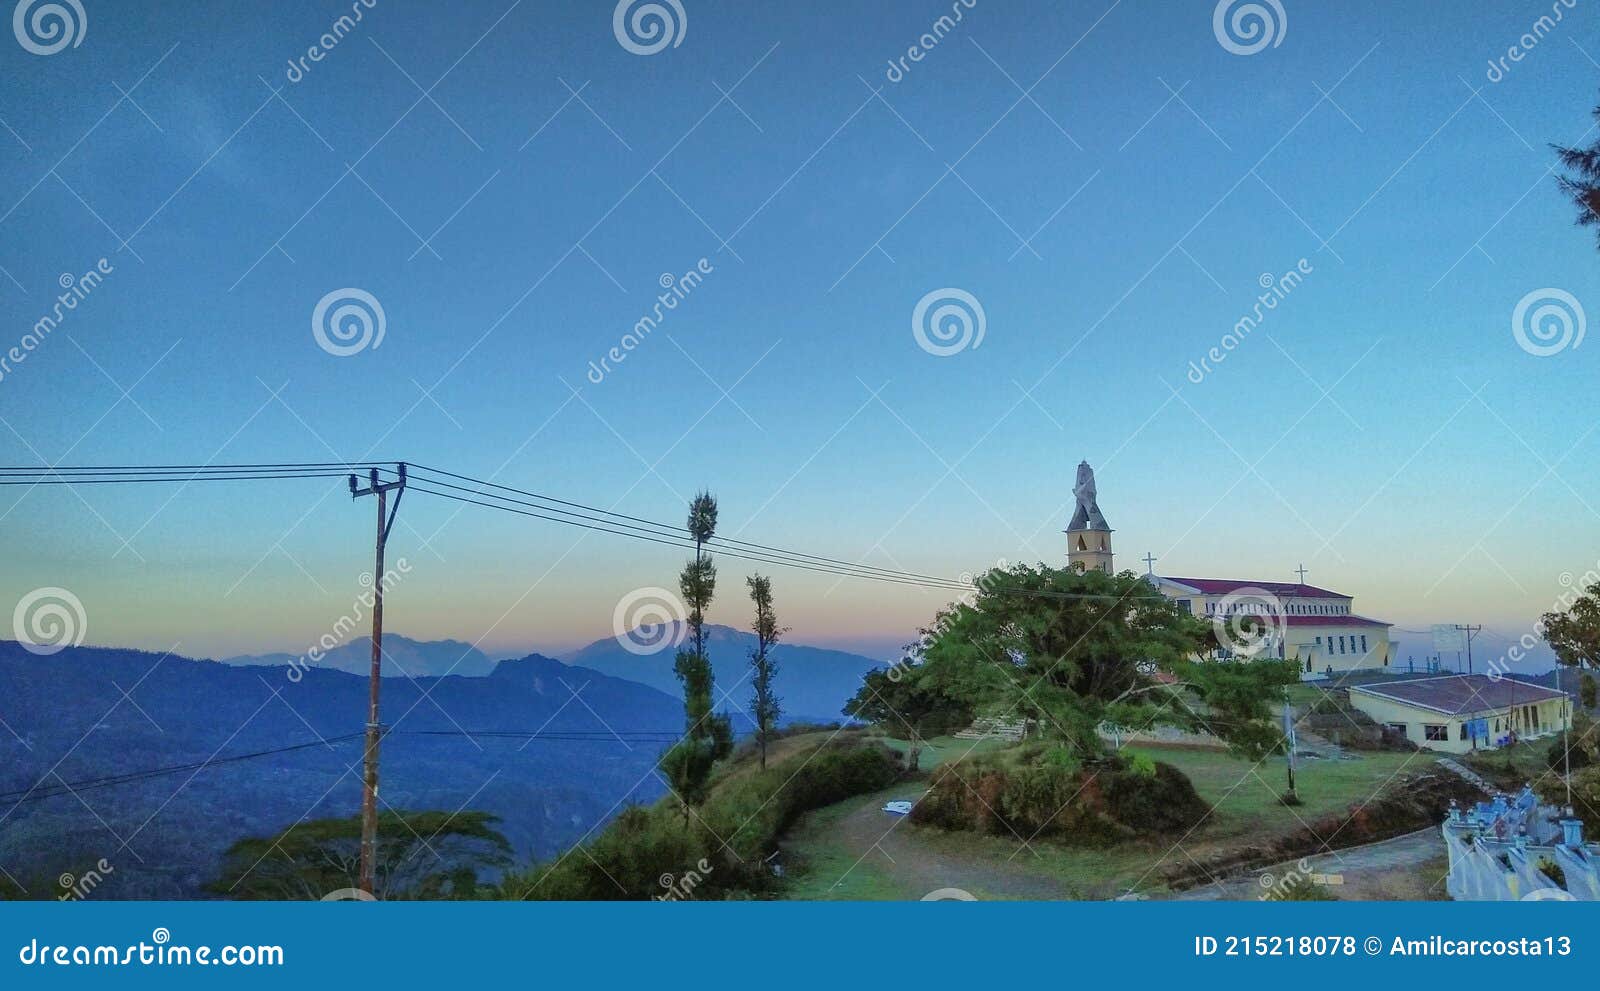 mountainous view in letefoho, timor-leste